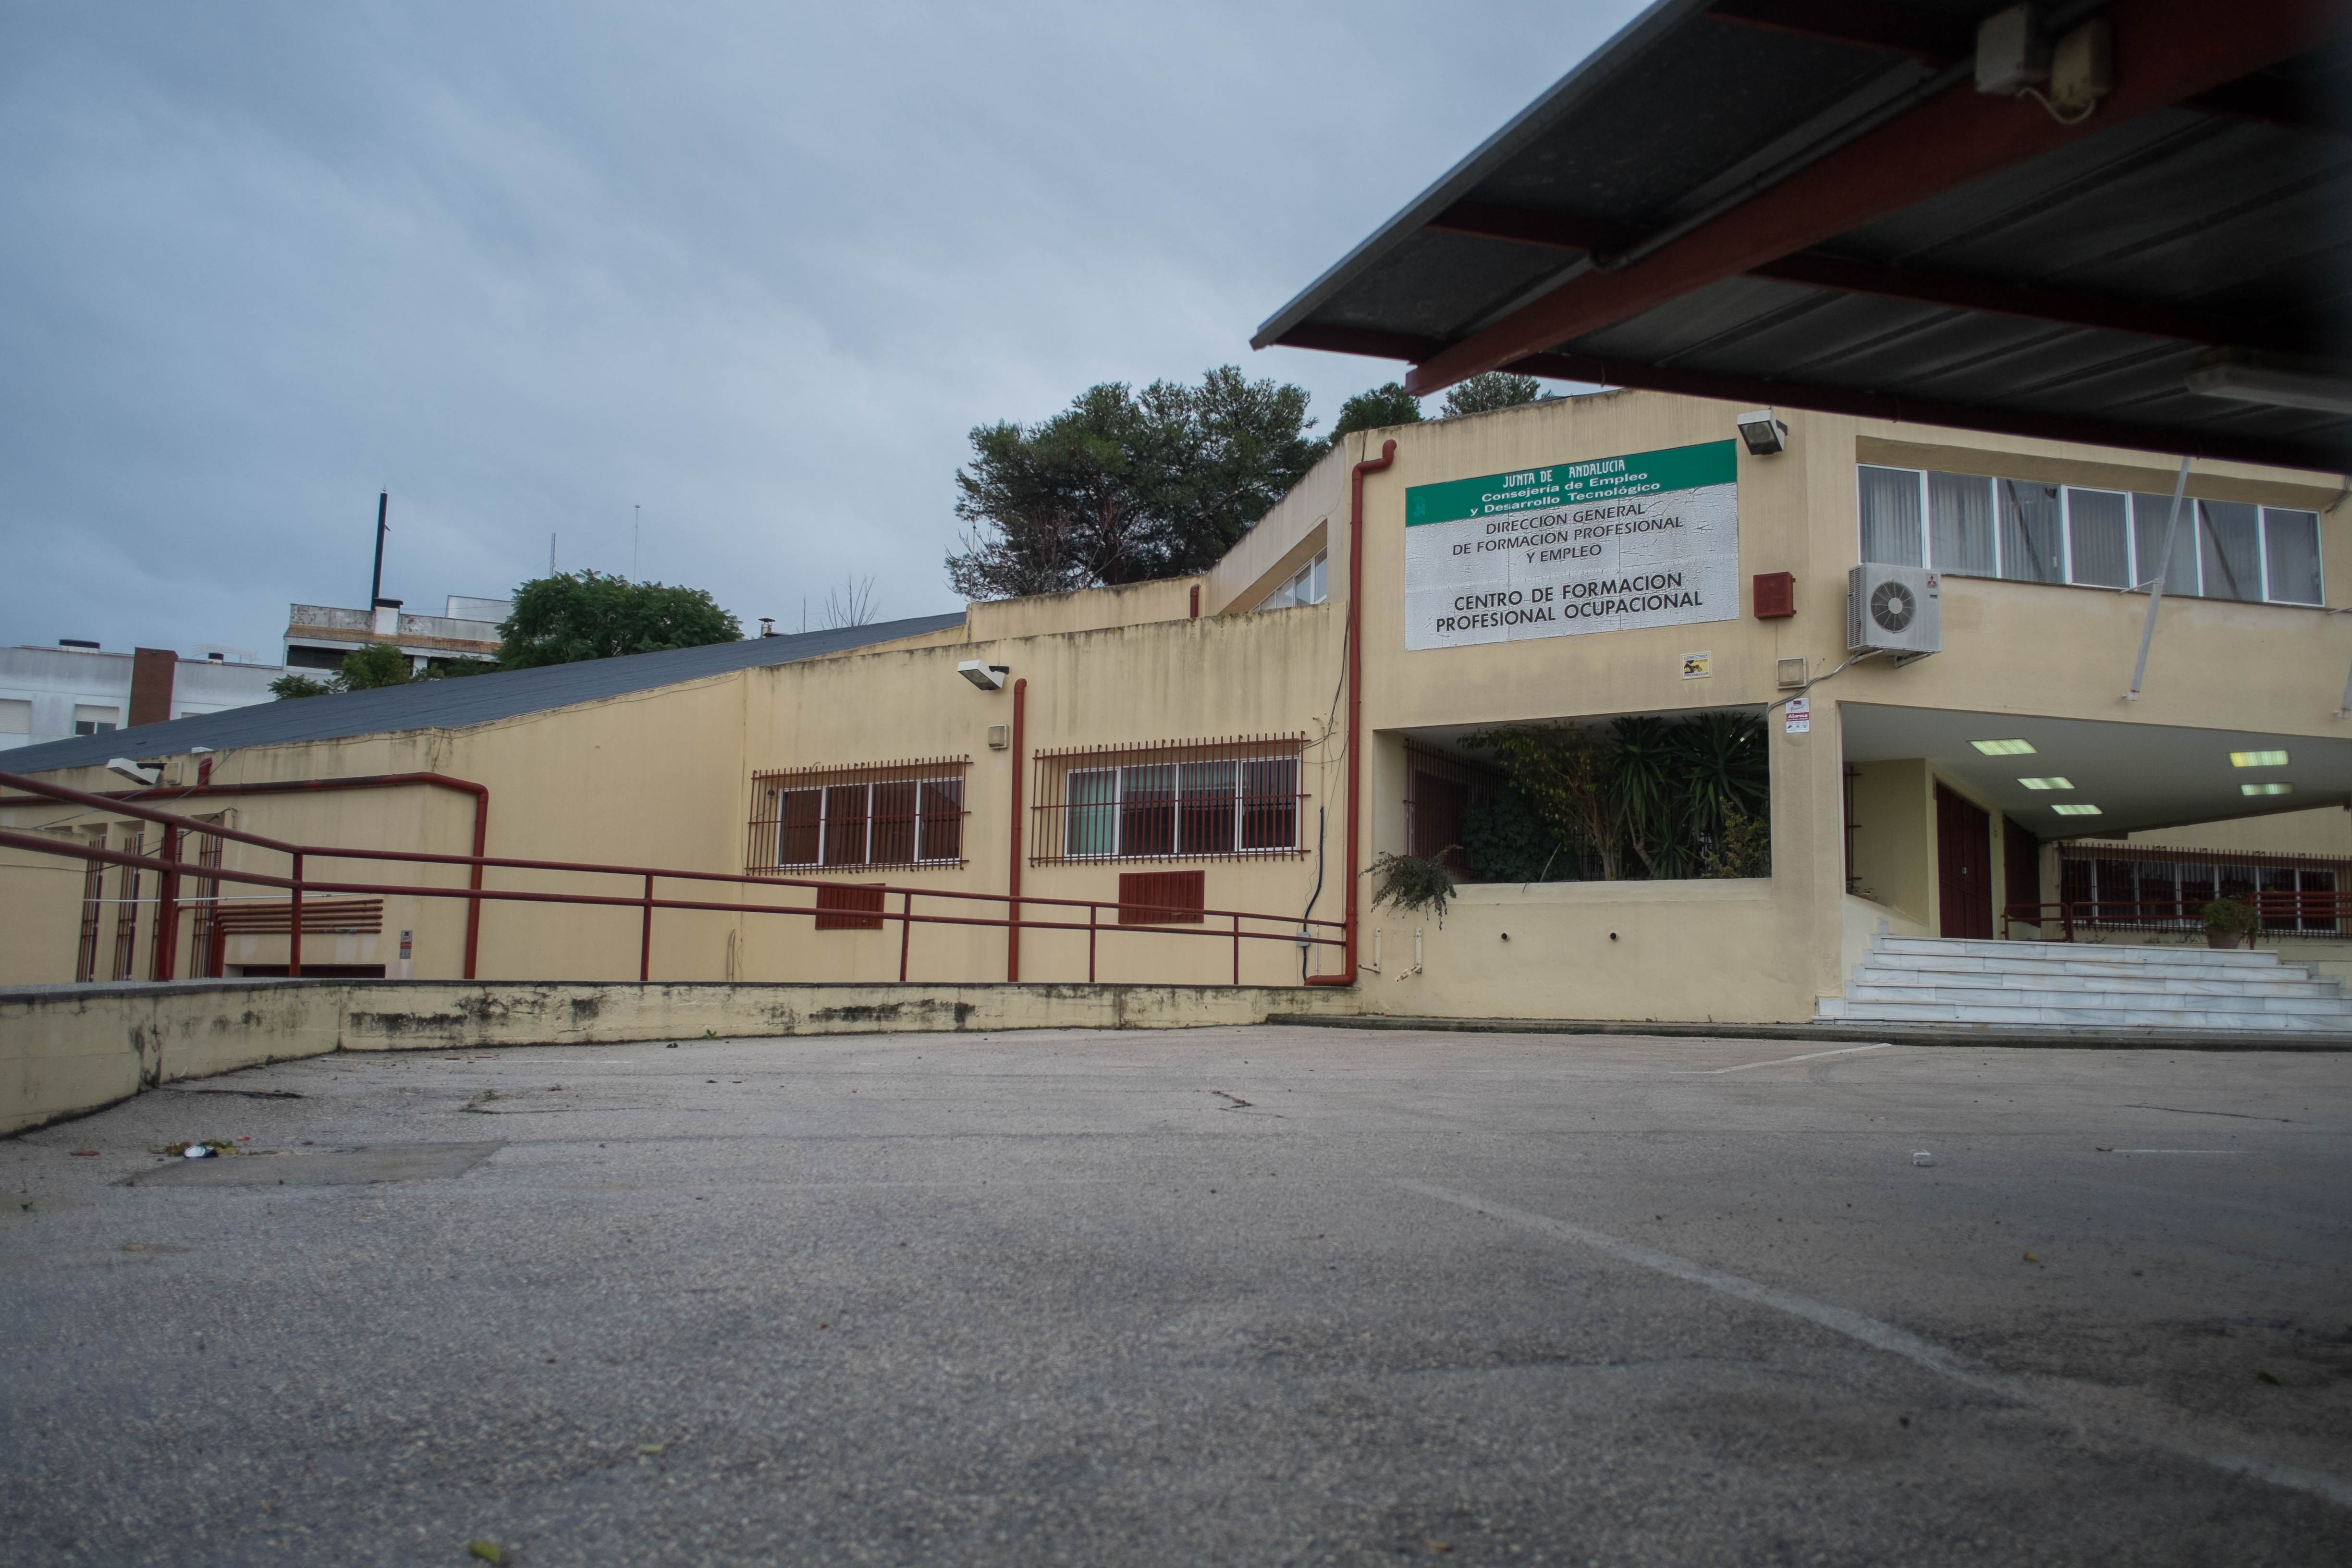 El centro de Formación Profesional Ocupacional de San Juan de Dios en Jerez.